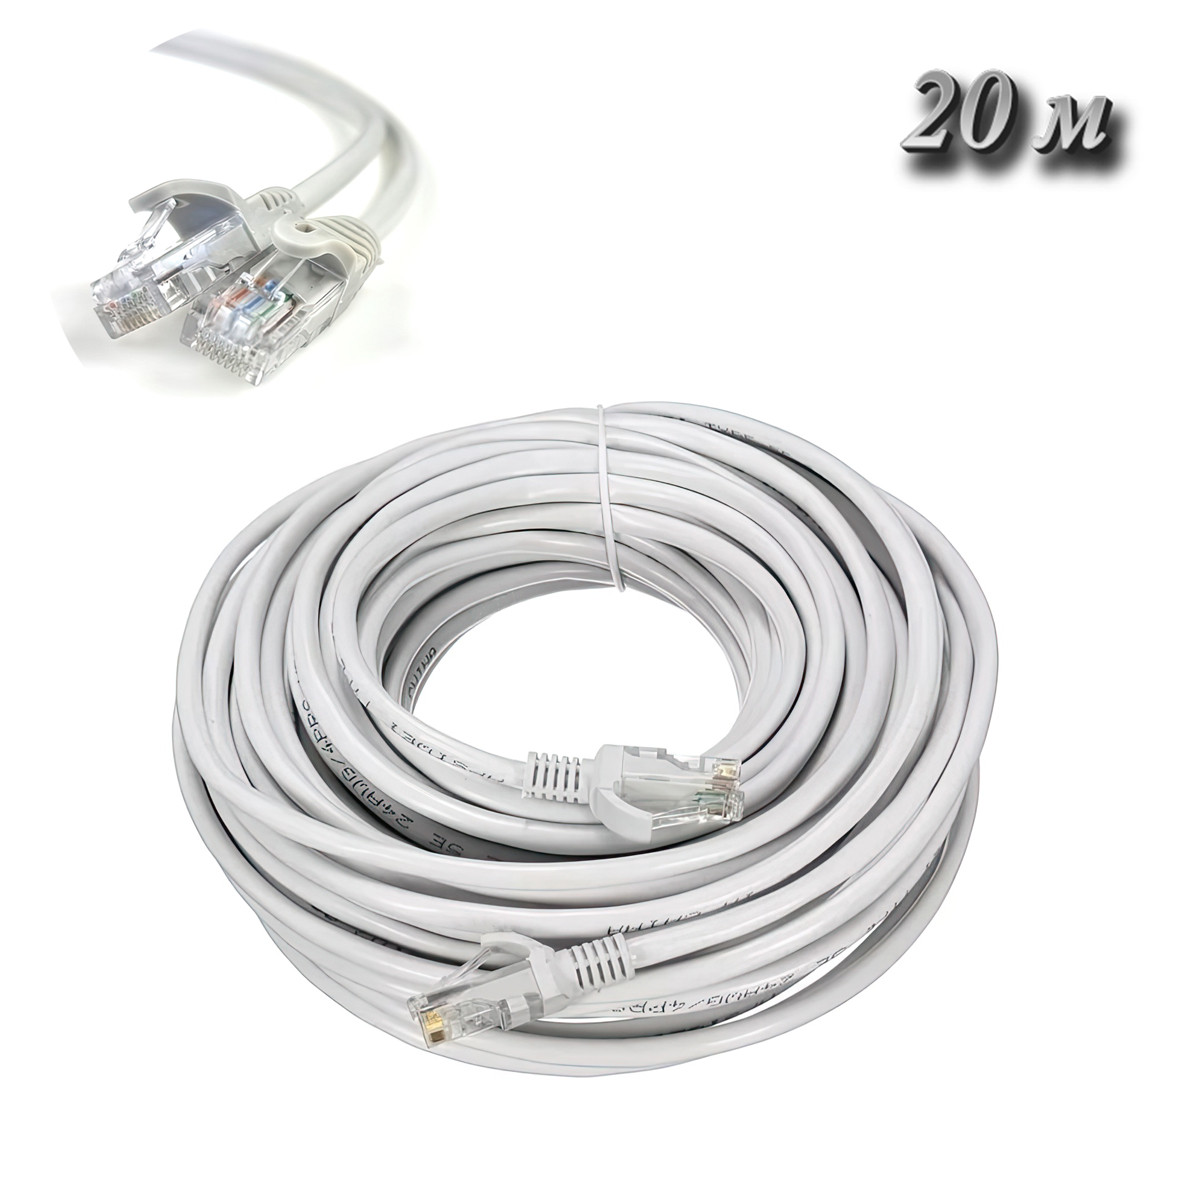 Кабель Ethernet LAN Cat 5E "HX" Белый, провод для роутера 20 м, патч корд кабель RJ-45 «T-s»